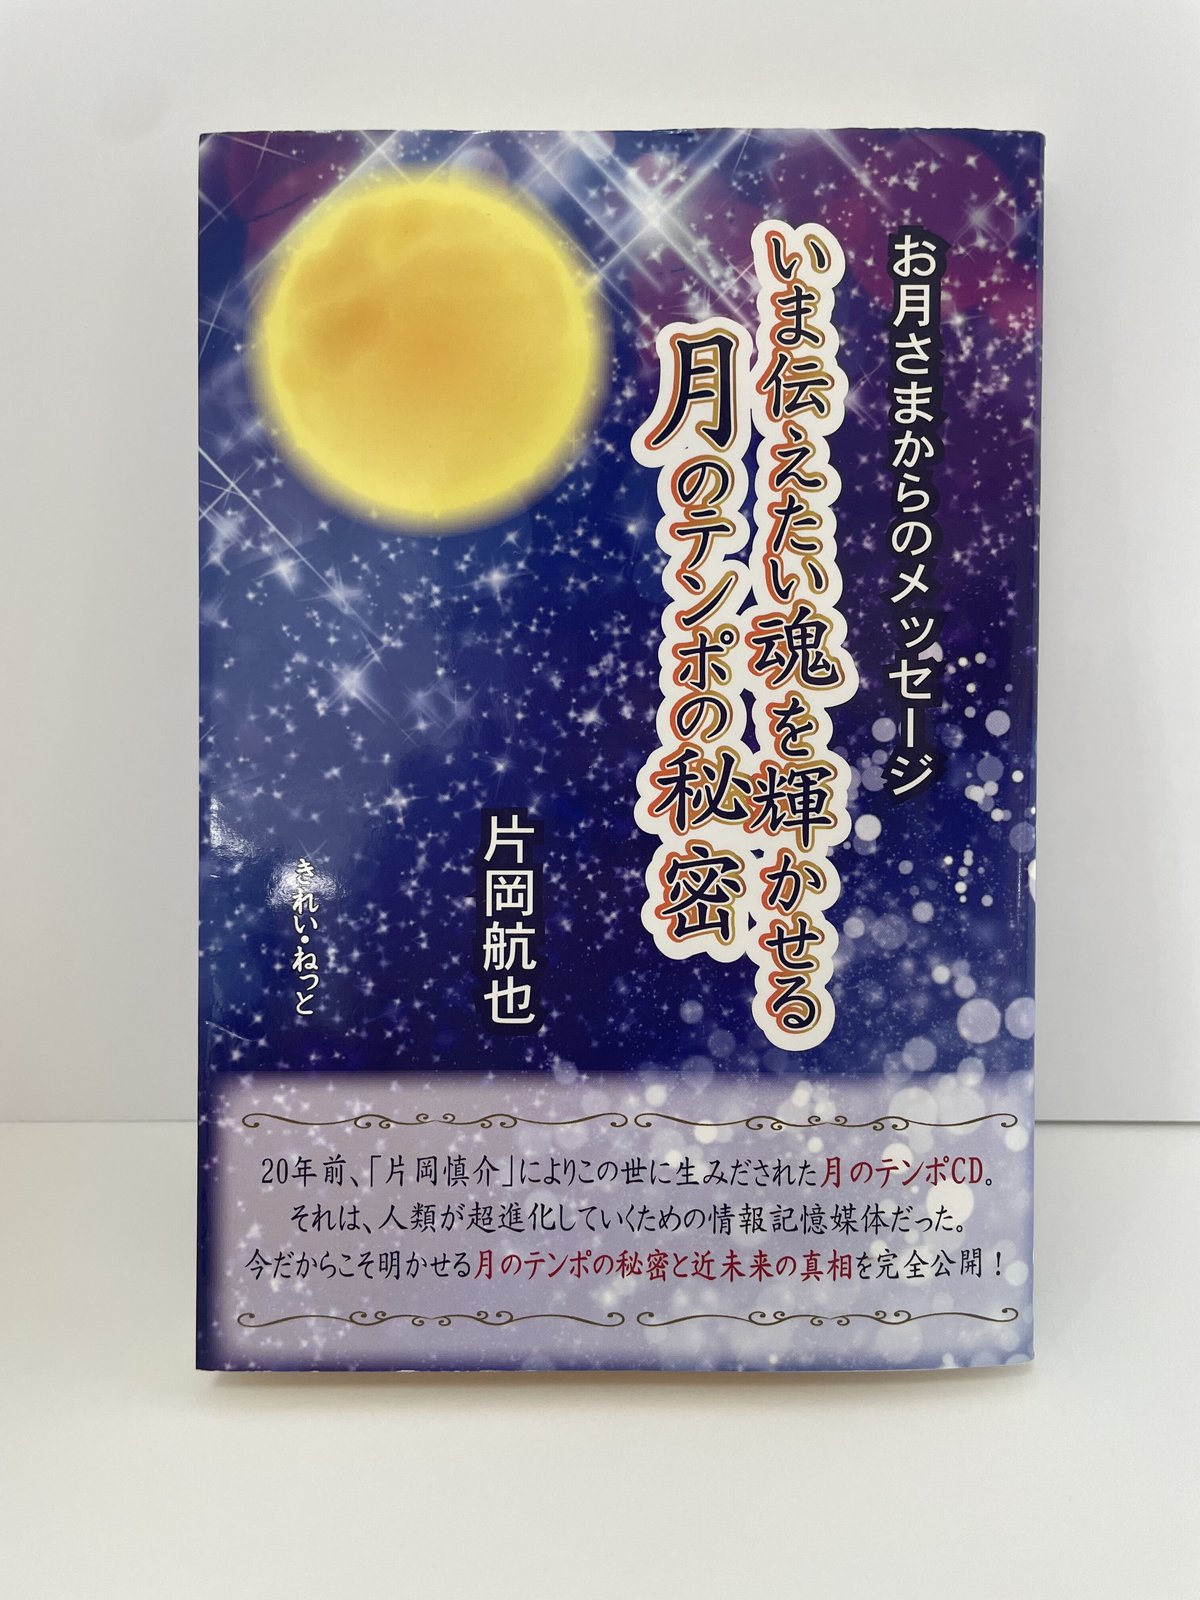 chihiro's　S...　お月さまからのメッセージ　いま伝えたい魂を輝かせる月のテンポの秘密